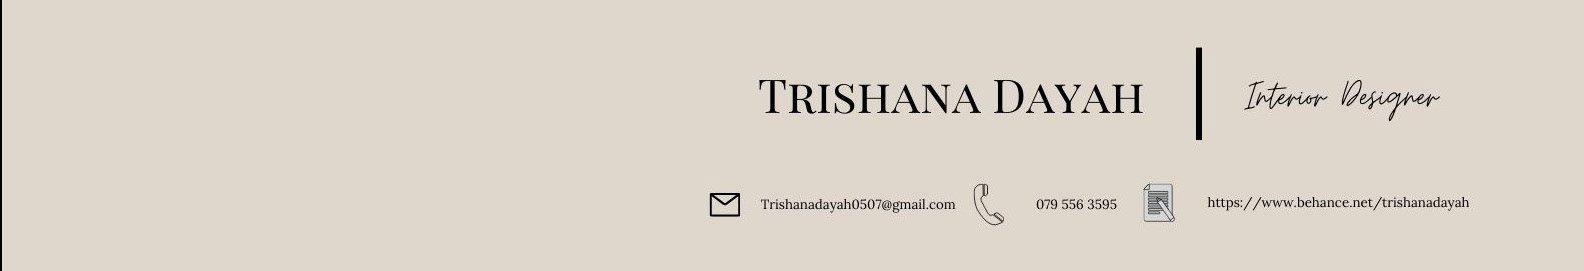 Trishana Dayah 的個人檔案橫幅